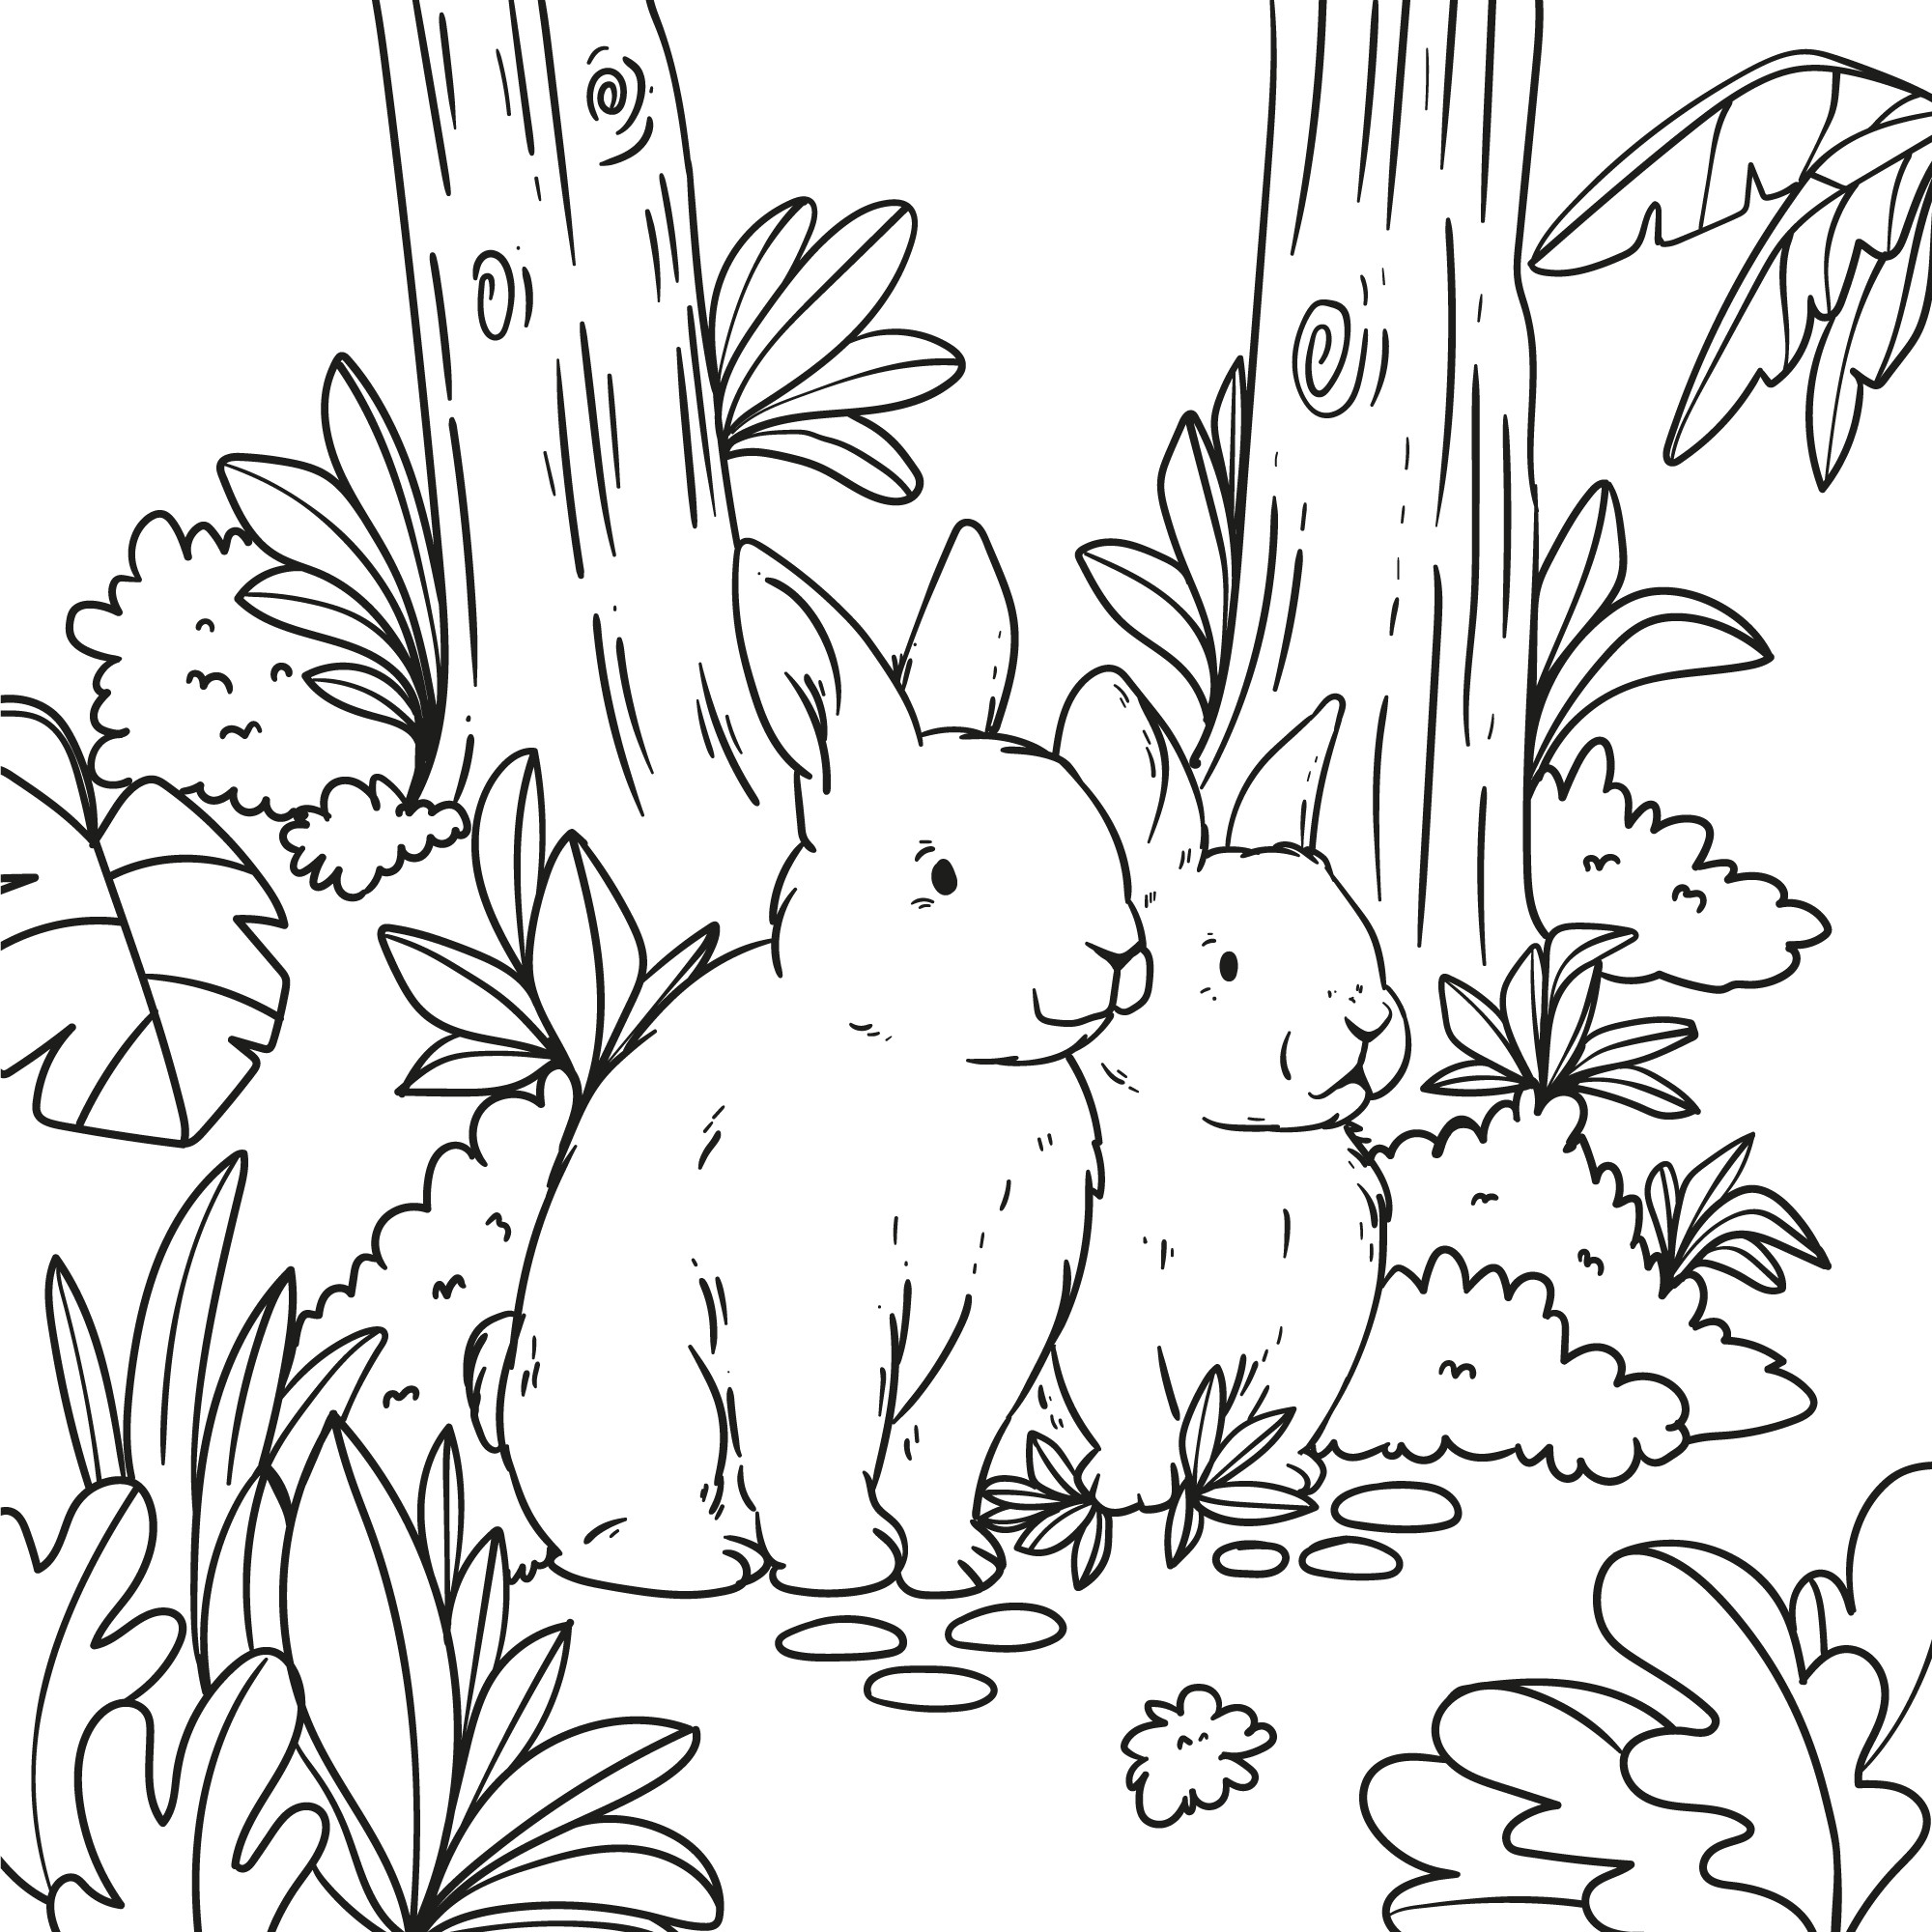 Раскраска для детей: кролики в тени деревьев